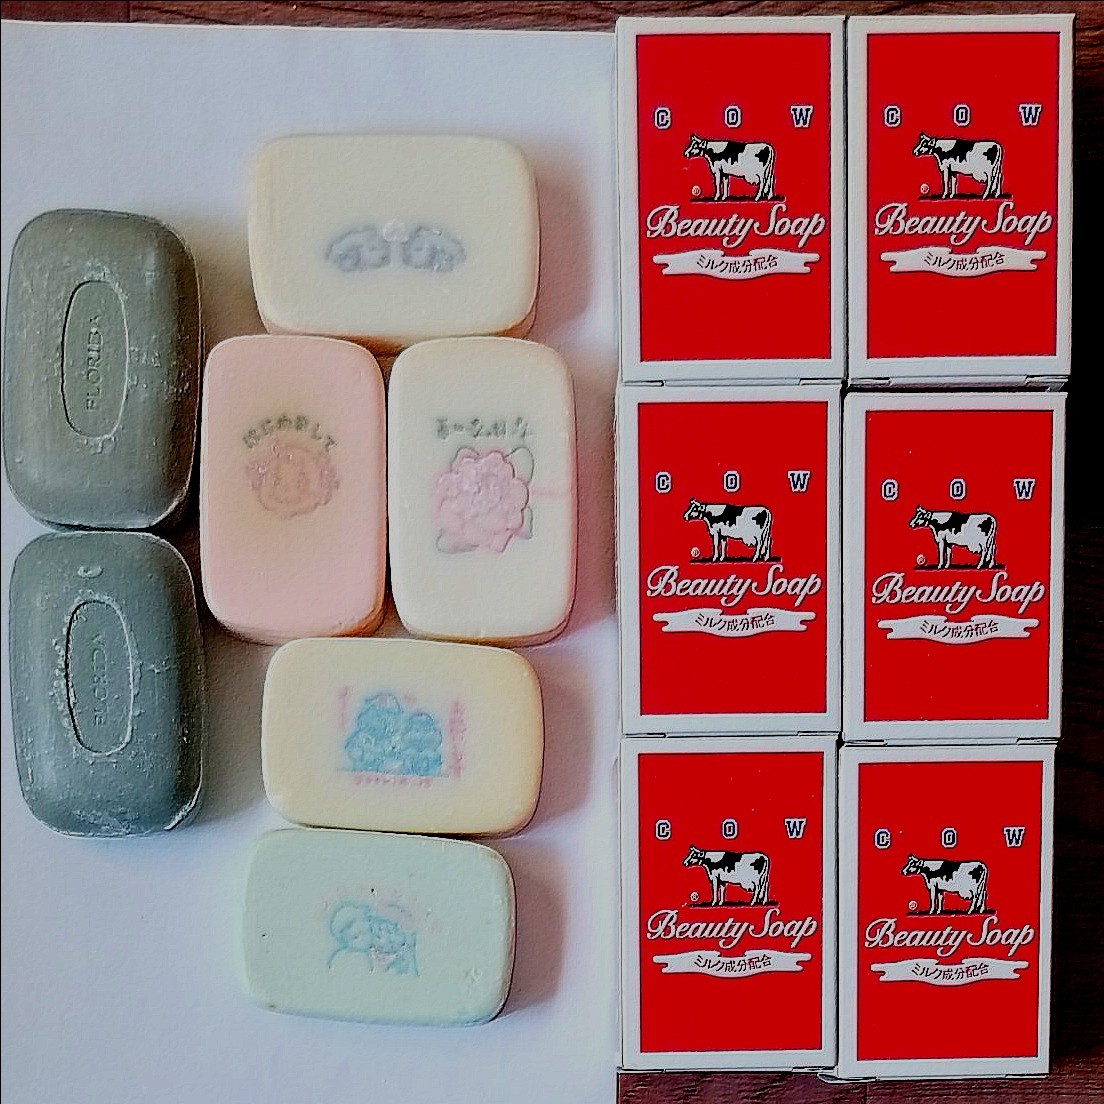 柔らかな質感の 牛乳石鹸BEAUTY SOAP 化粧石鹸カウブランド赤箱a1一箱100個100g